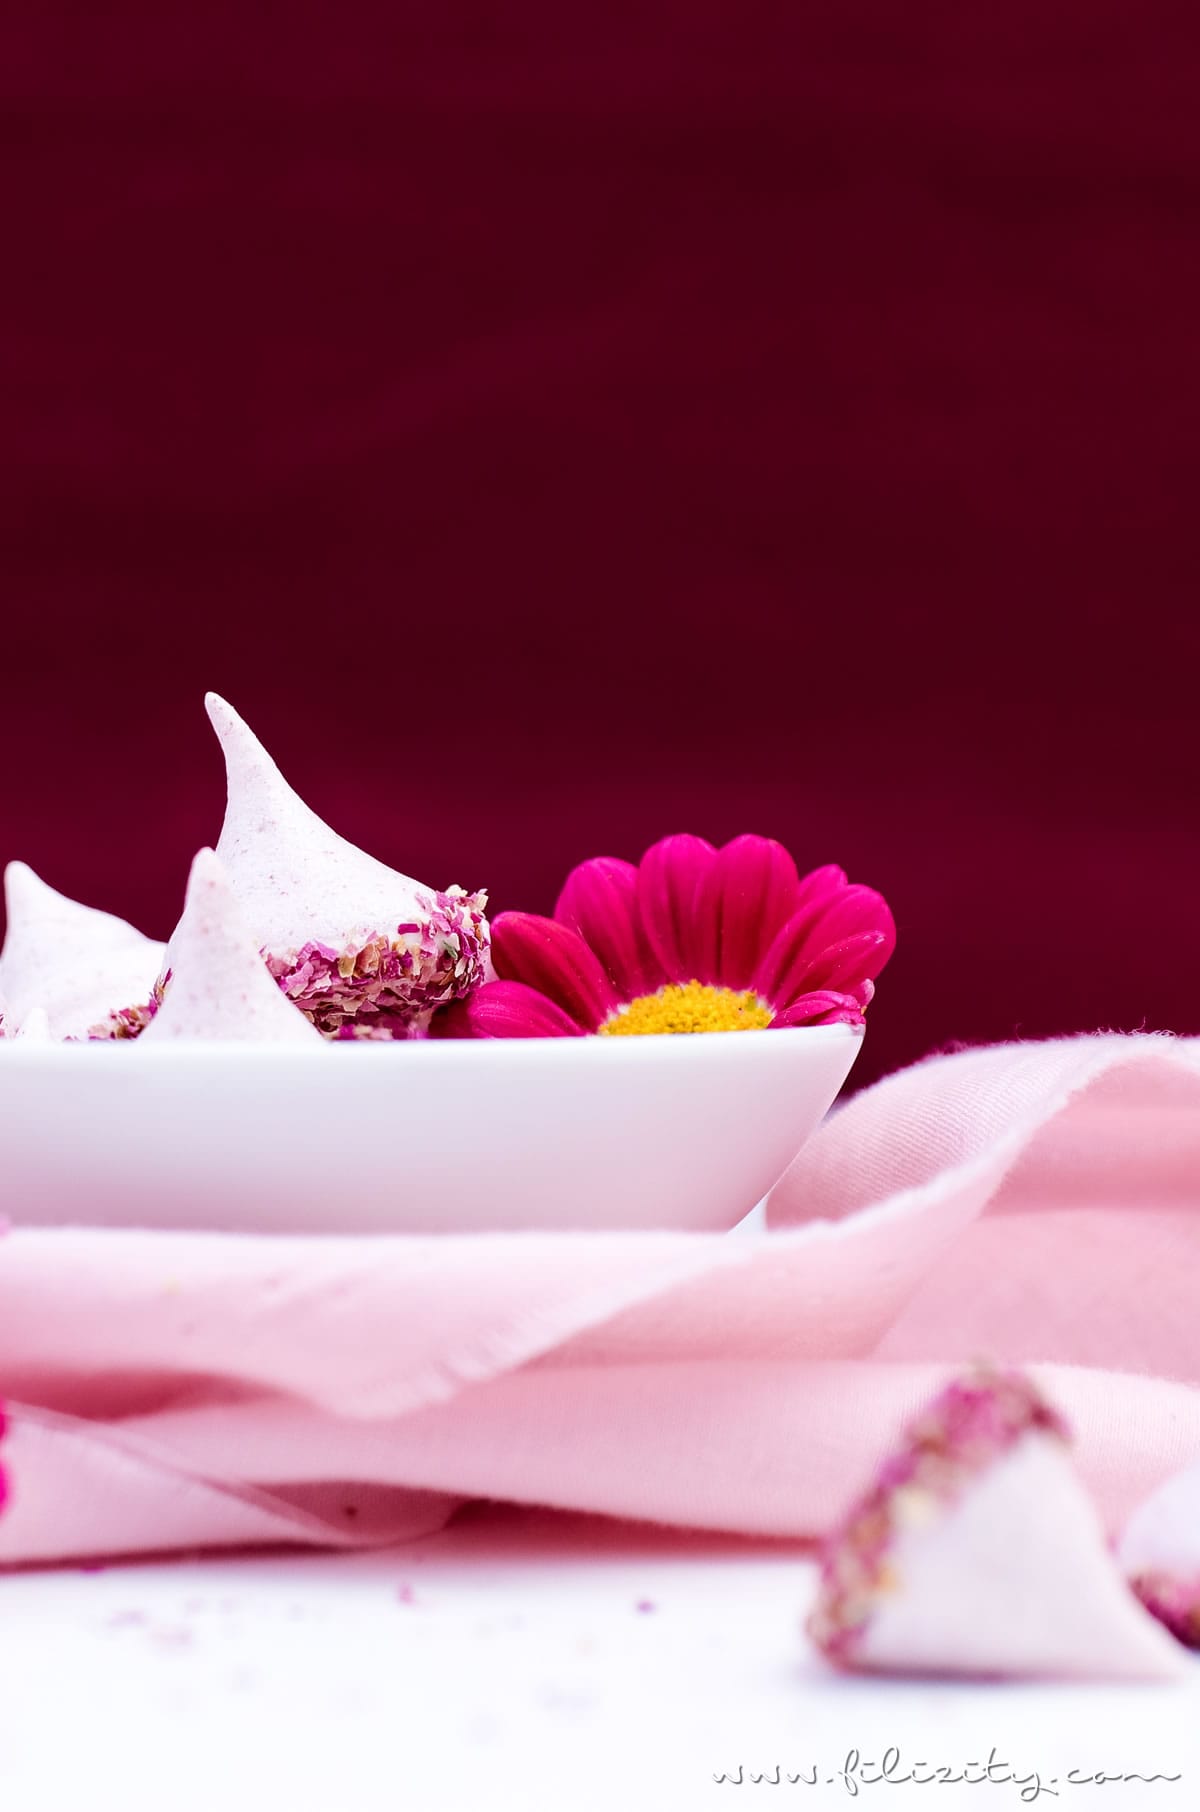 Himbeer-Baiser mit Rosen - Liebesbotschaft aus der Küche | Baiser-Rezept mit Himbeeren, weißer Schokolade und Rosen | Filizity.com | Food-Blog aus dem Rheinland #muttertag #geschenkidee #valentinstag